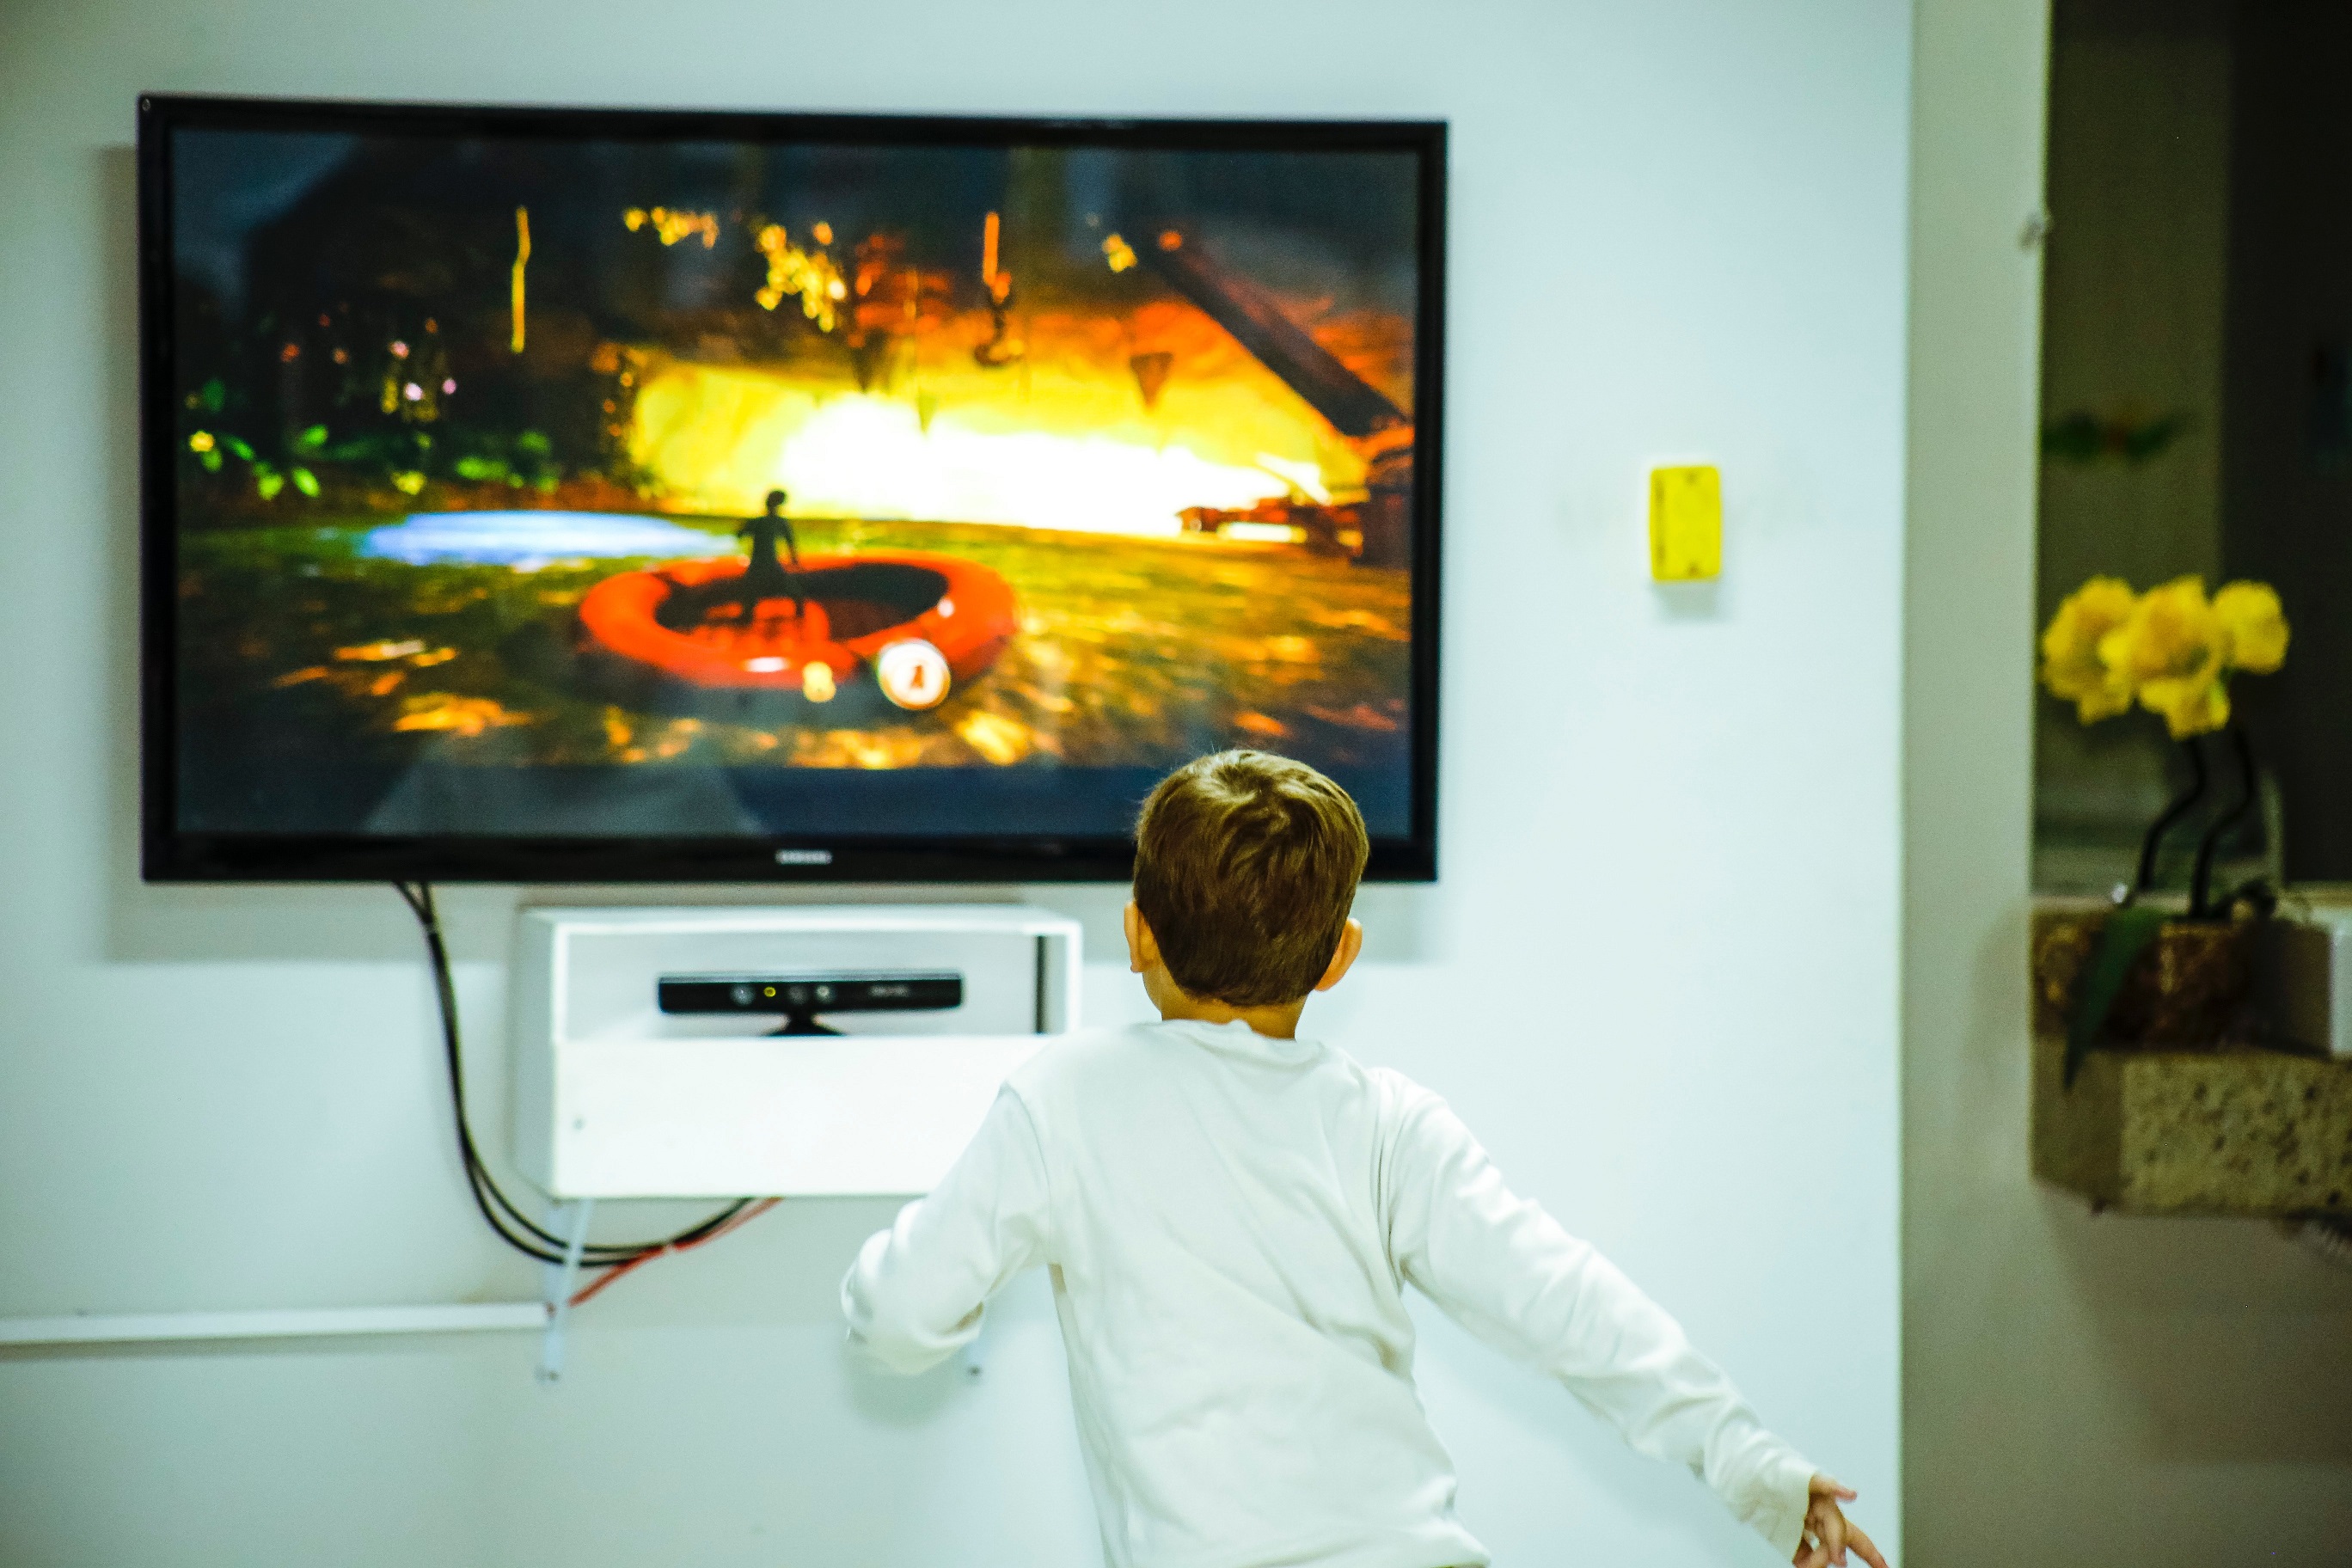 يحذر الاخصائيون النفسيون الآباء والامهات من إفراط الأطفال في مشاهدة التلفزيون والتي أصبحت مشكلة رئيسية في العصر الحاضر (بيكسيلز)